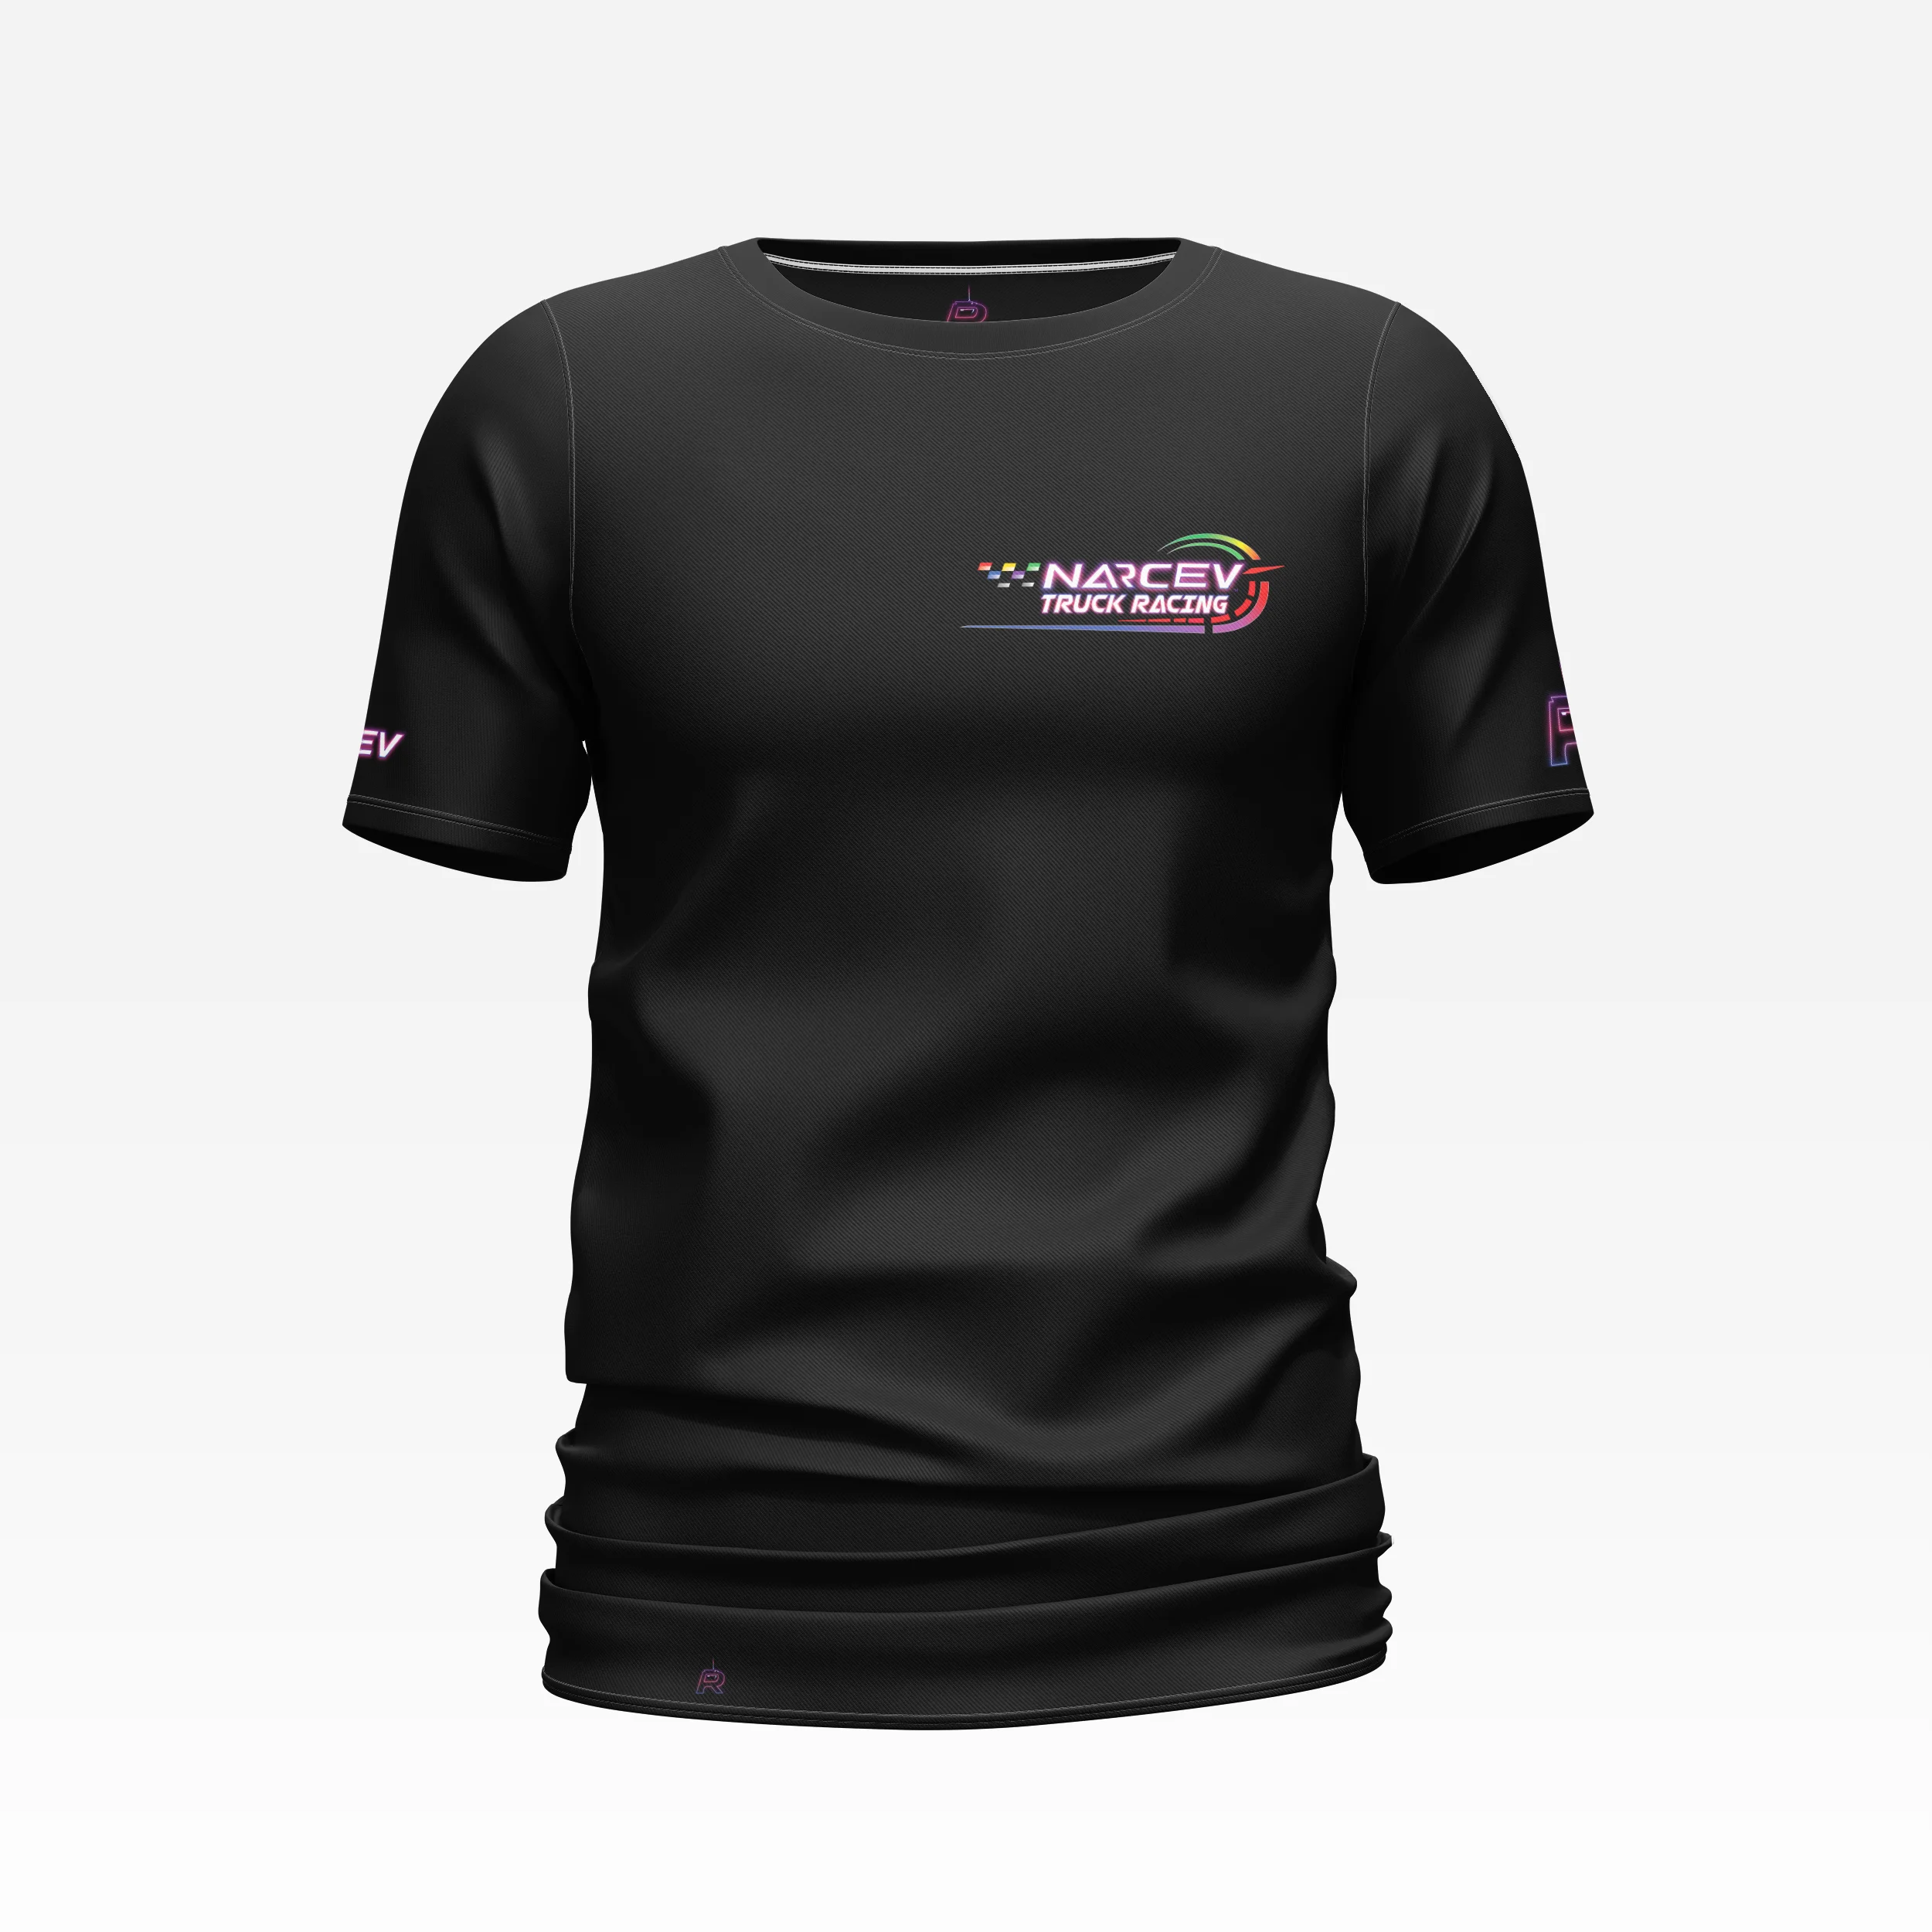 Narcev_truck_racing_t-shirt_black